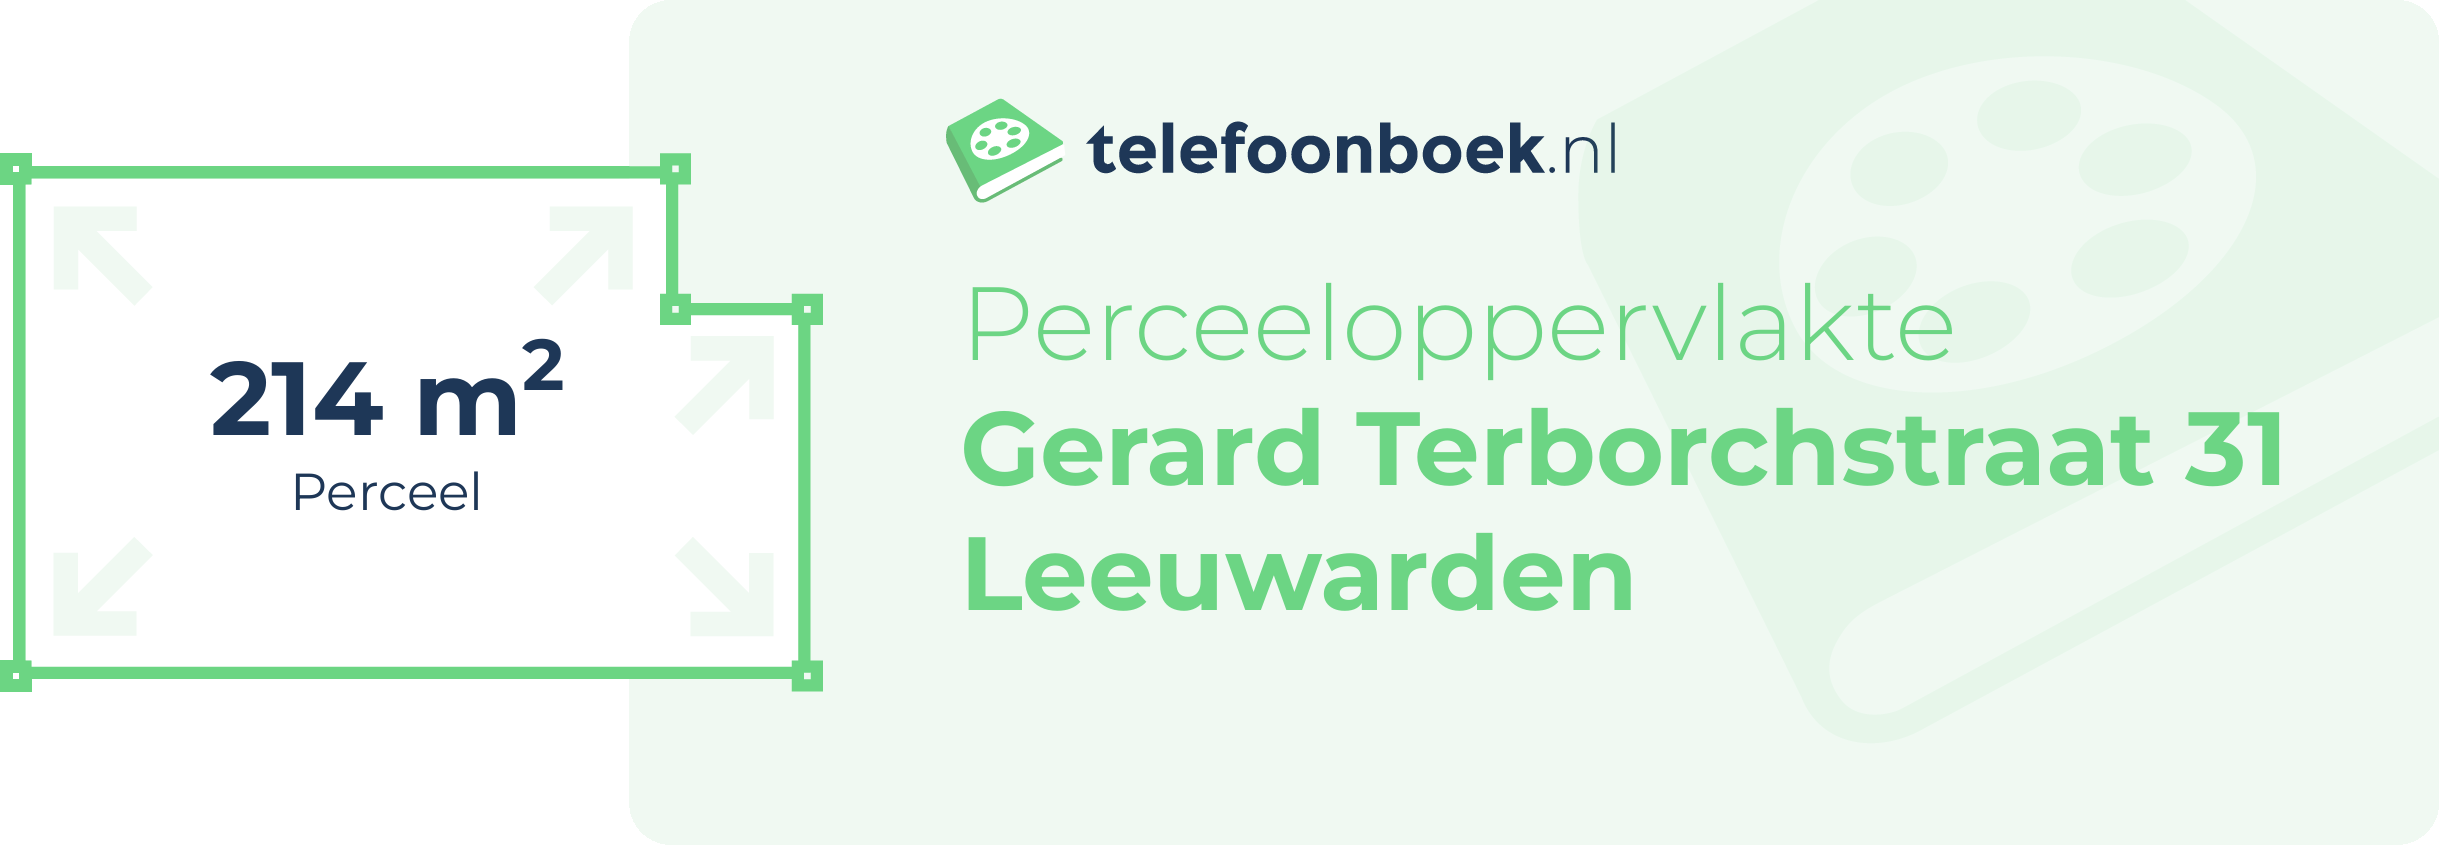 Perceeloppervlakte Gerard Terborchstraat 31 Leeuwarden